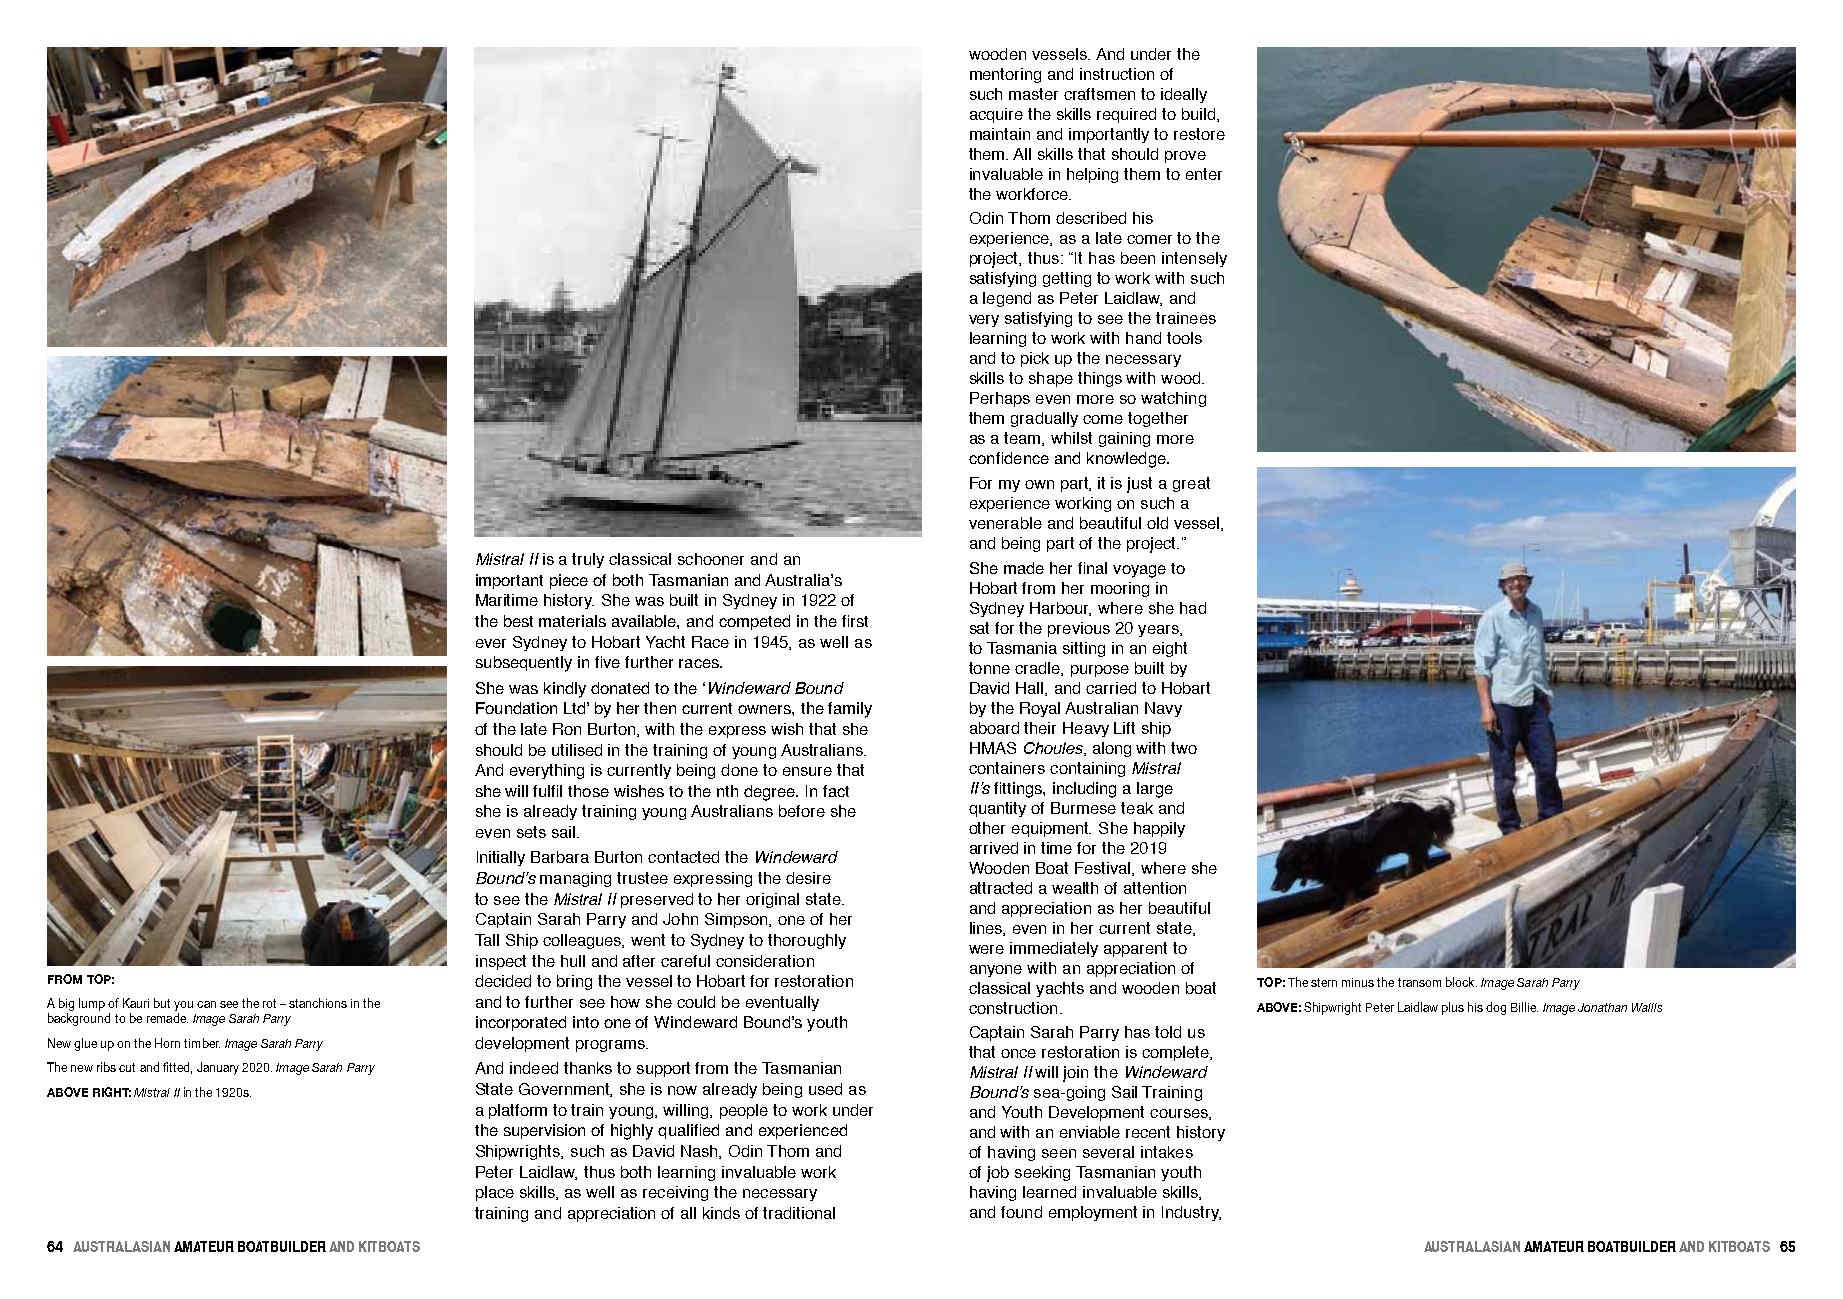 Australasian Amature Boat Building Magazine — Windeward Bound